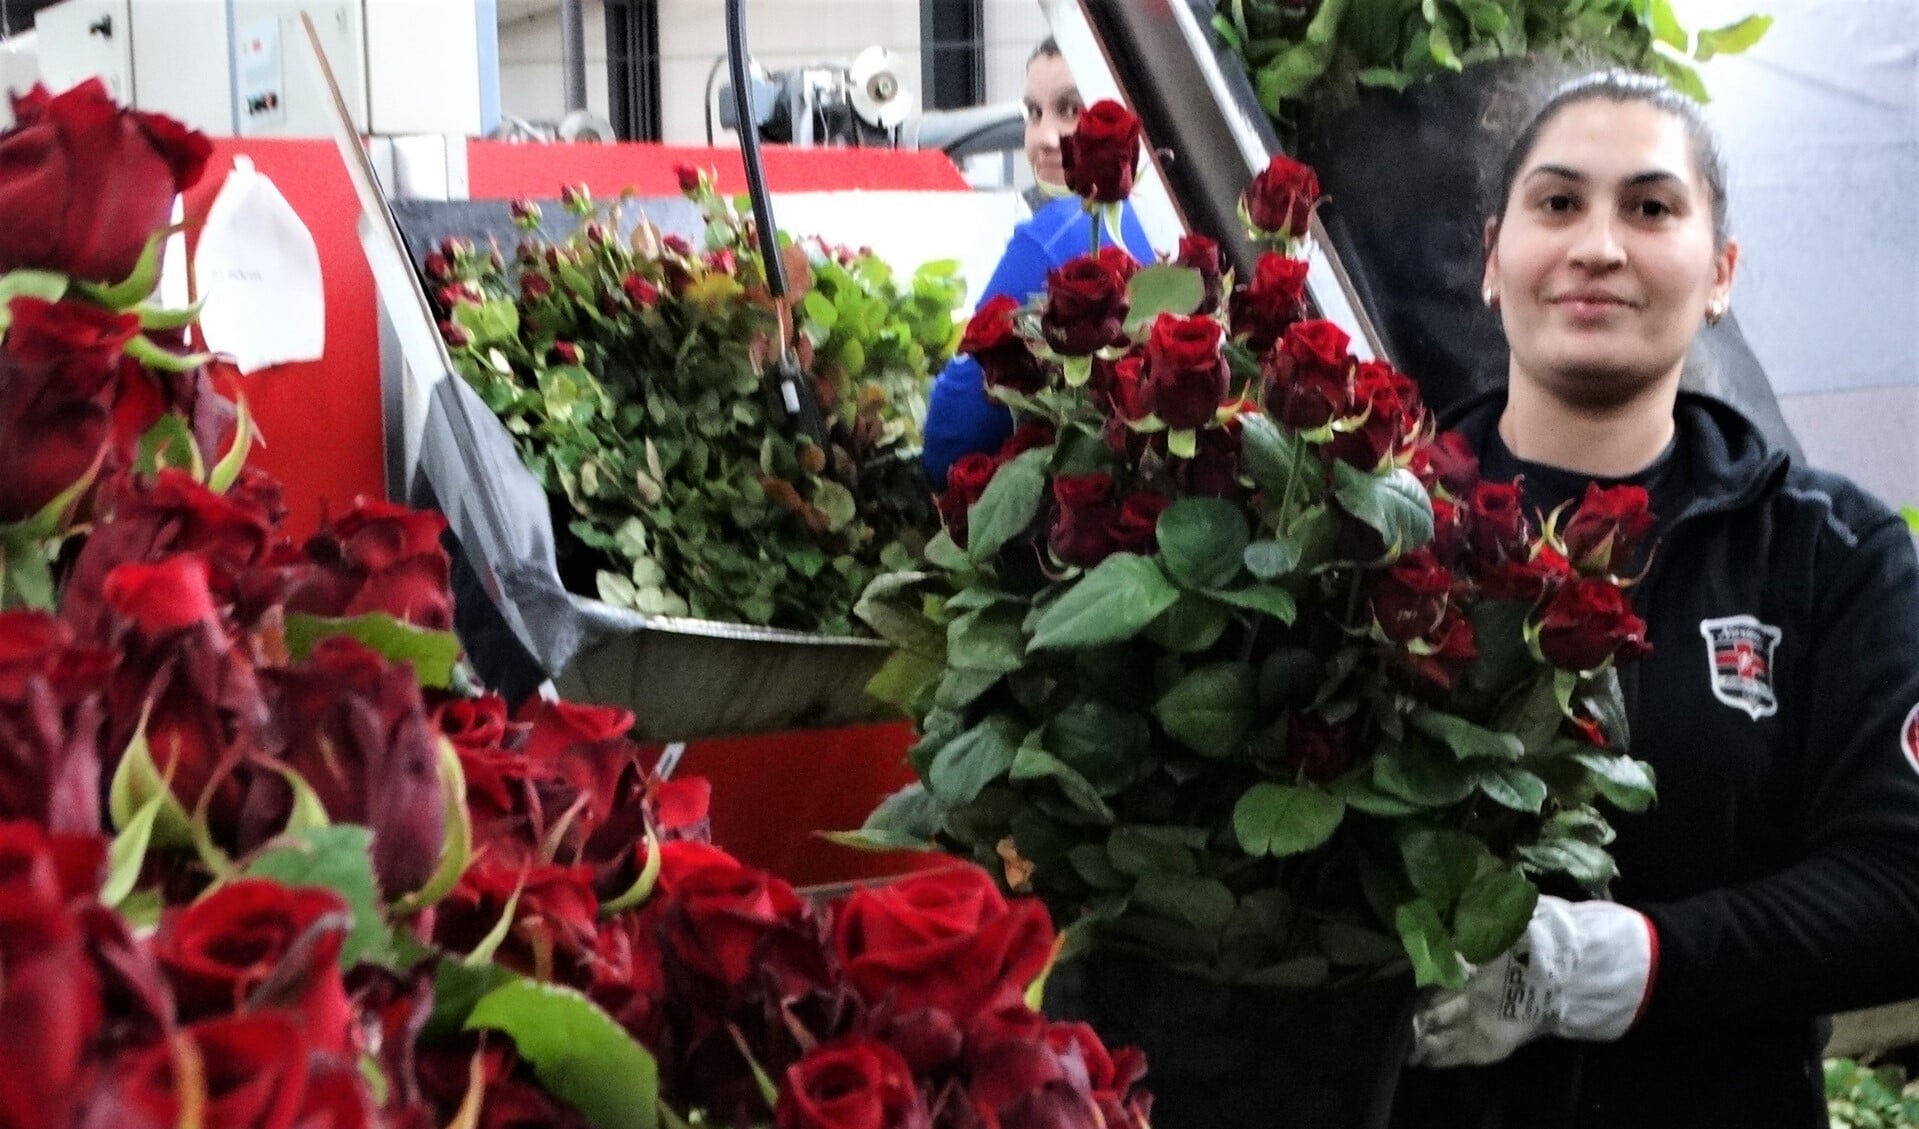 Aneta werkt met veel plezier in de moderne rozenkwekerij en laat trots de 'liefdesroos' zien.